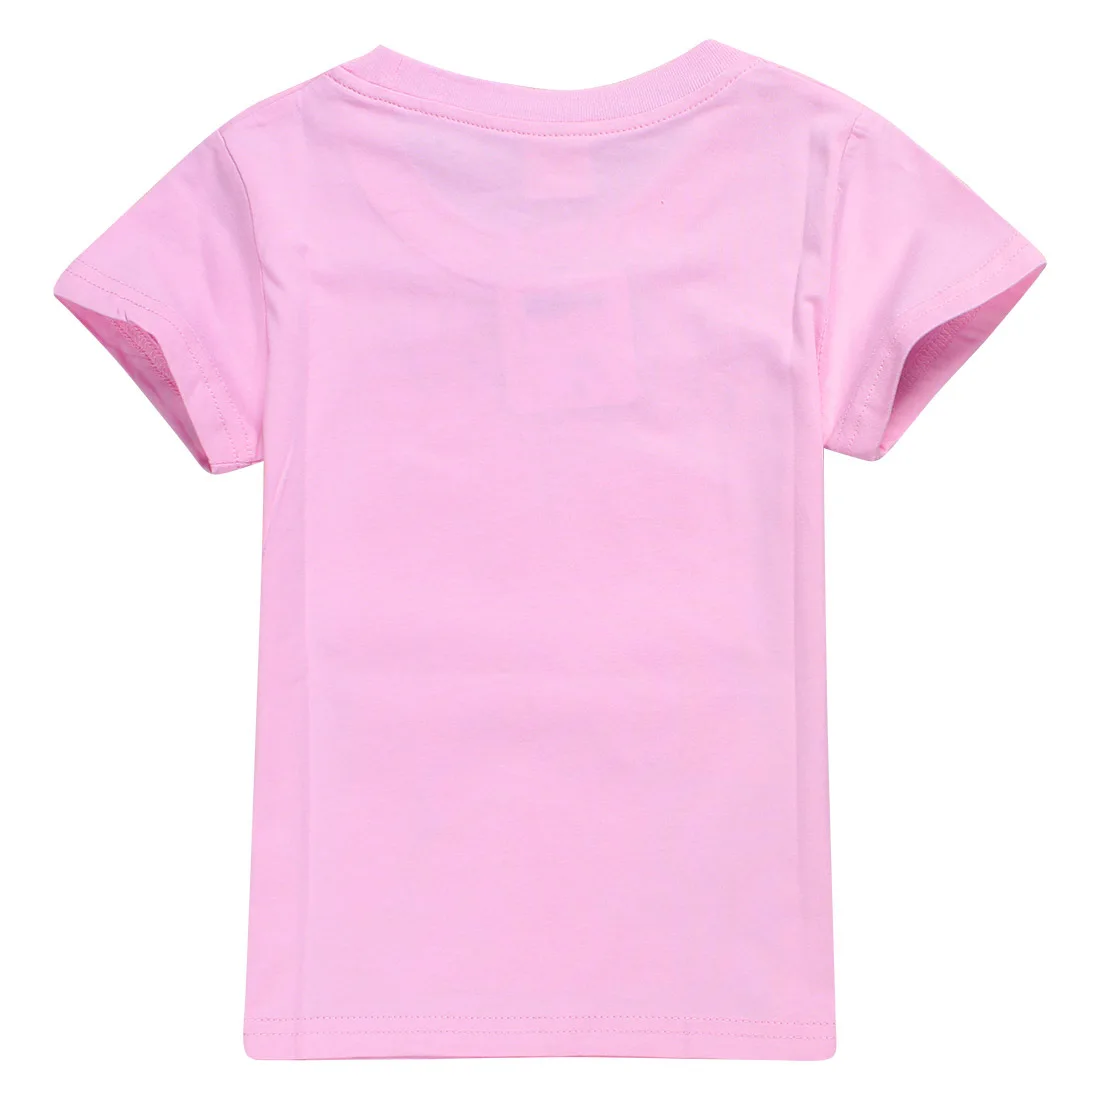 Новая летняя хлопковая модная футболка с изображением Кэти Перри Одежда для мальчиков и девочек детская футболка комбинезон для детей, футболка детские топы, футболки, детская одежда